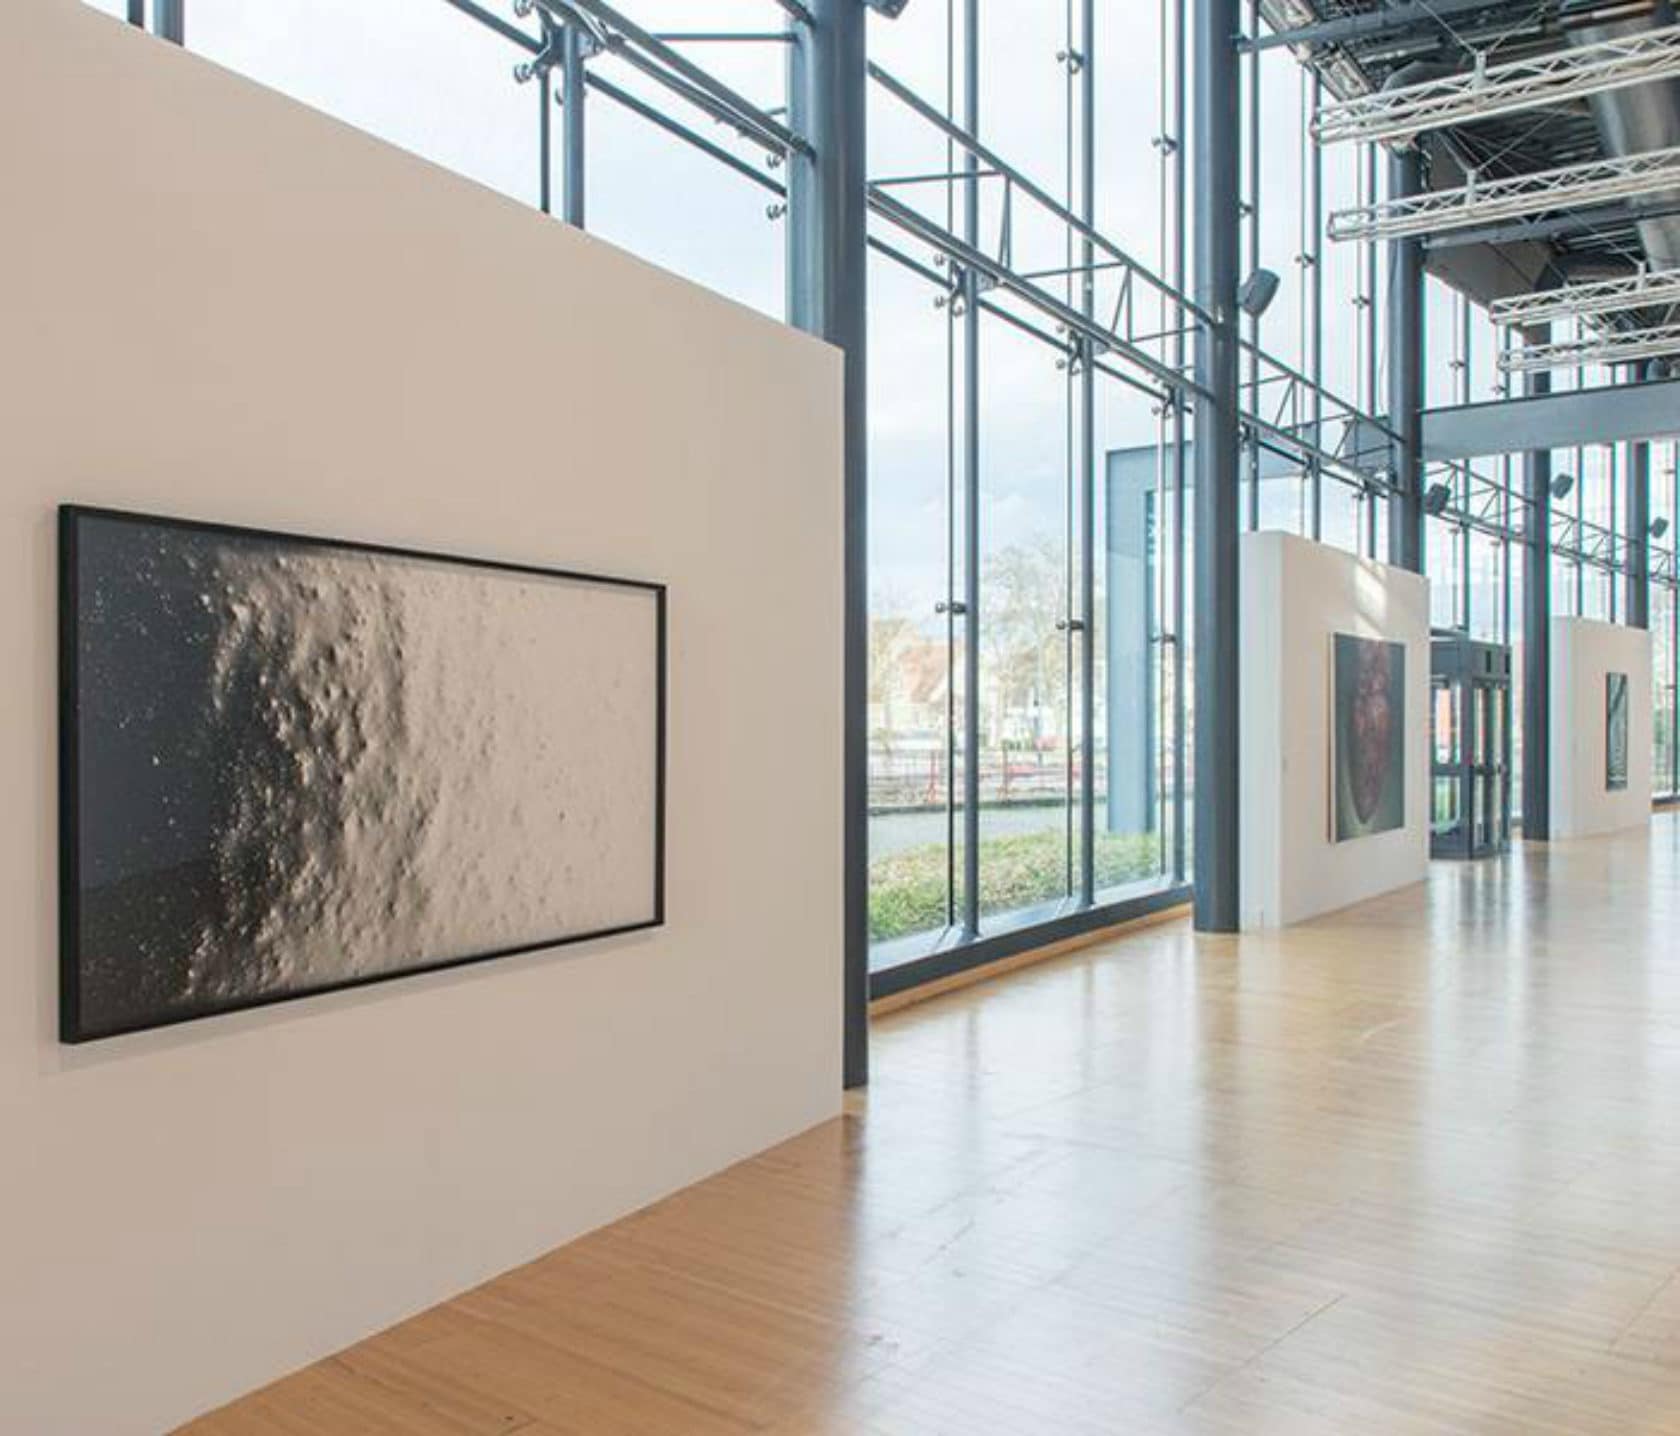 Une vue de l’exposition, avec l’oeuvre de Pierre Savatier au premier plan. crédits photographiques: Klaus Stöber